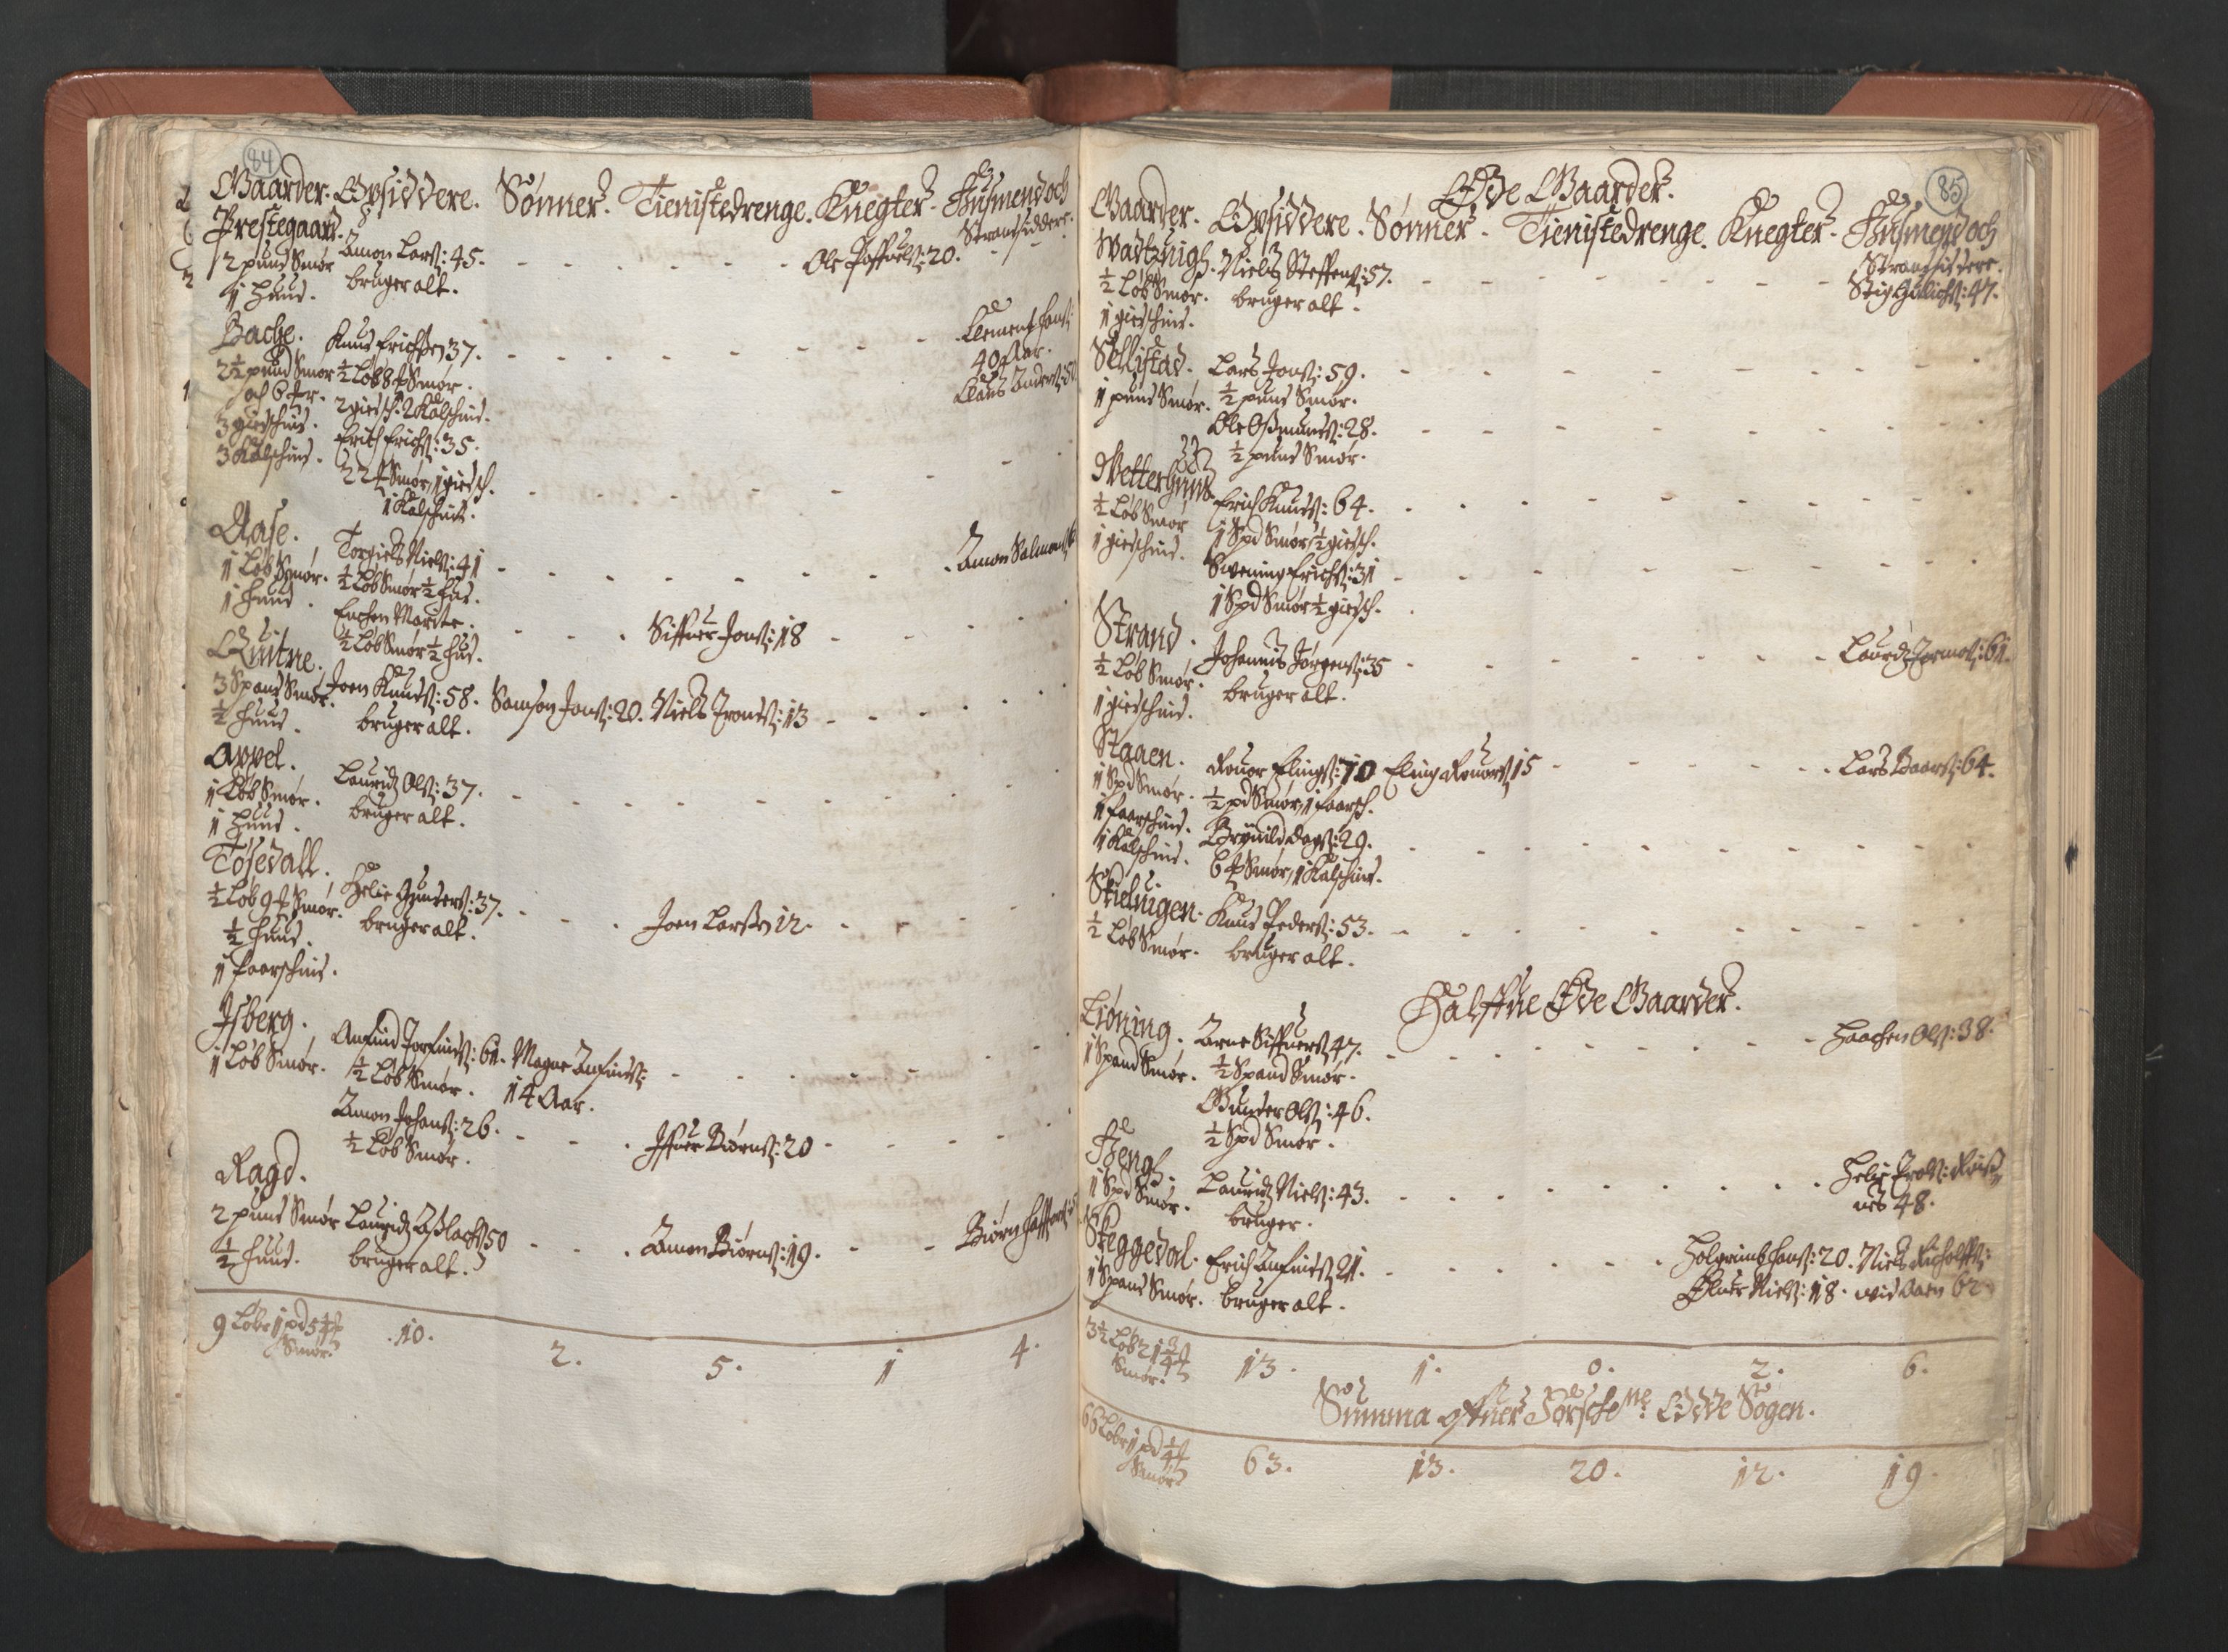 RA, Bailiff's Census 1664-1666, no. 14: Hardanger len, Ytre Sogn fogderi and Indre Sogn fogderi, 1664-1665, p. 84-85